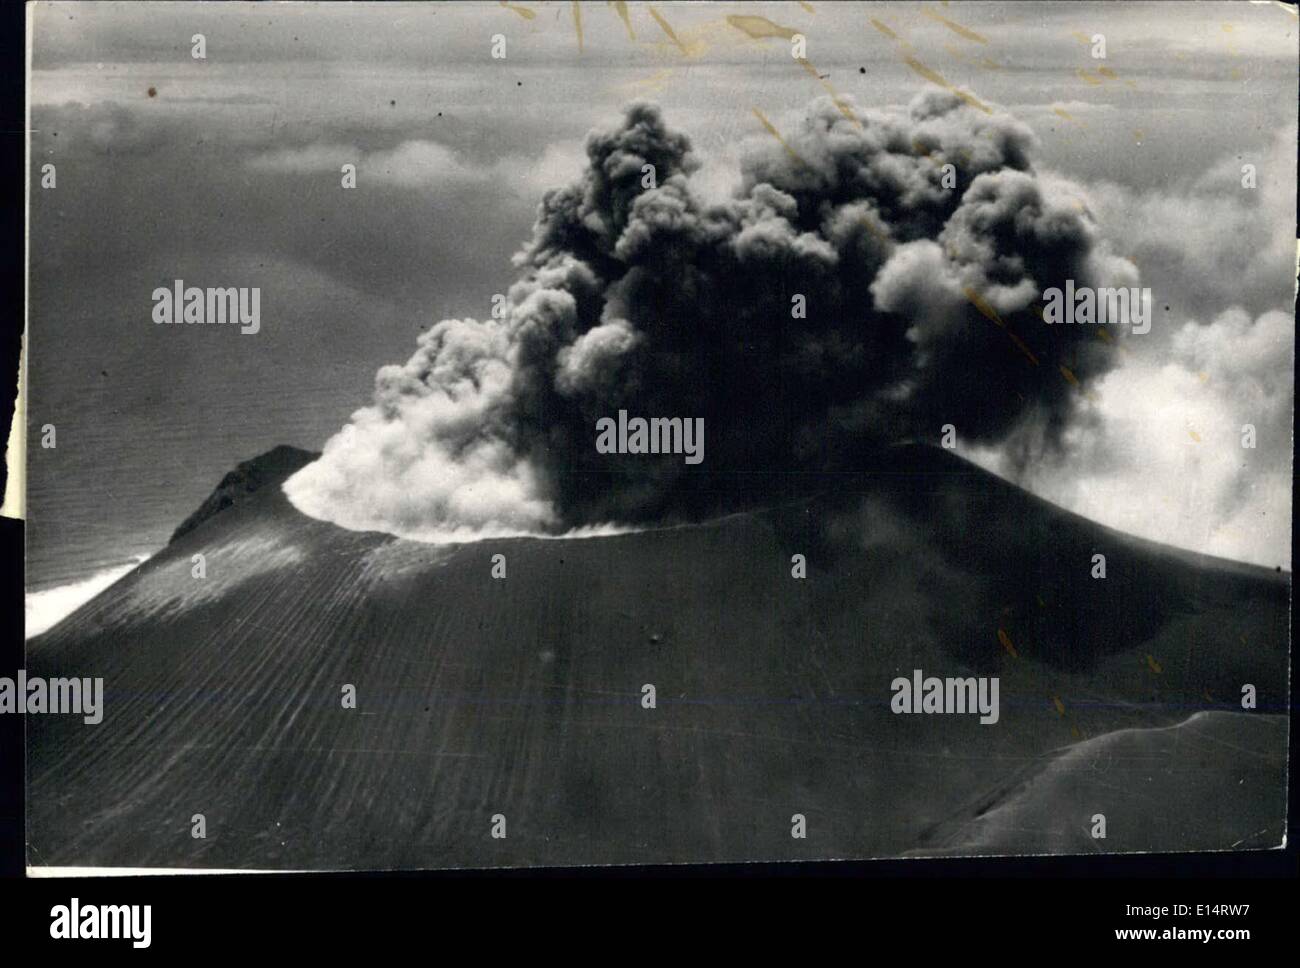 18 de abril de 2012 - el volcán más nuevo del mundo, el "Hotspot", en la isla de San Benedicto: Setecientos ochenta millas al sur de San Diego es la ubicación de este volcán activo más nuevo. Se cree que este volcán puede tener un enlace submarino con las islas FH... Sin duda hace una imagen impresiona. Foto de stock